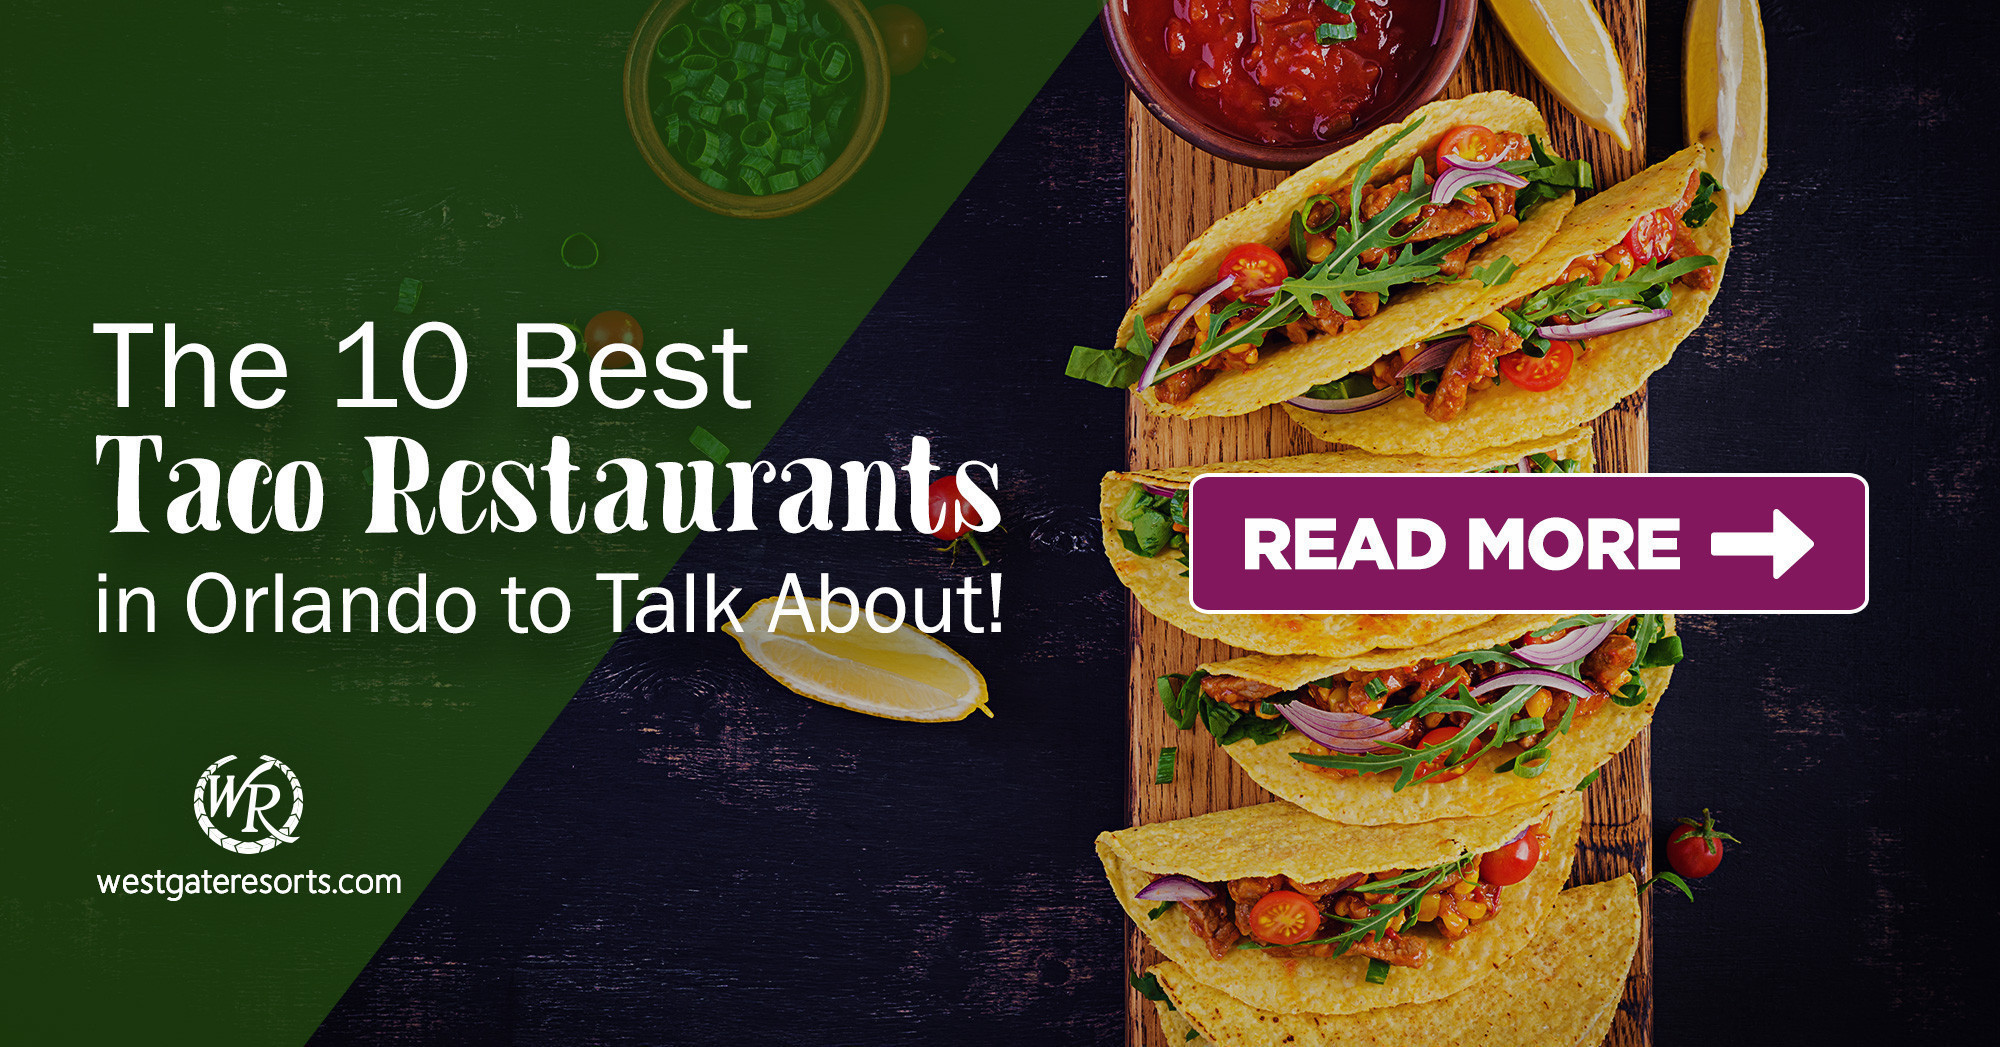 Los 10 mejores restaurantes de tacos en Orlando para Taco Bout (¡Hablar de!)